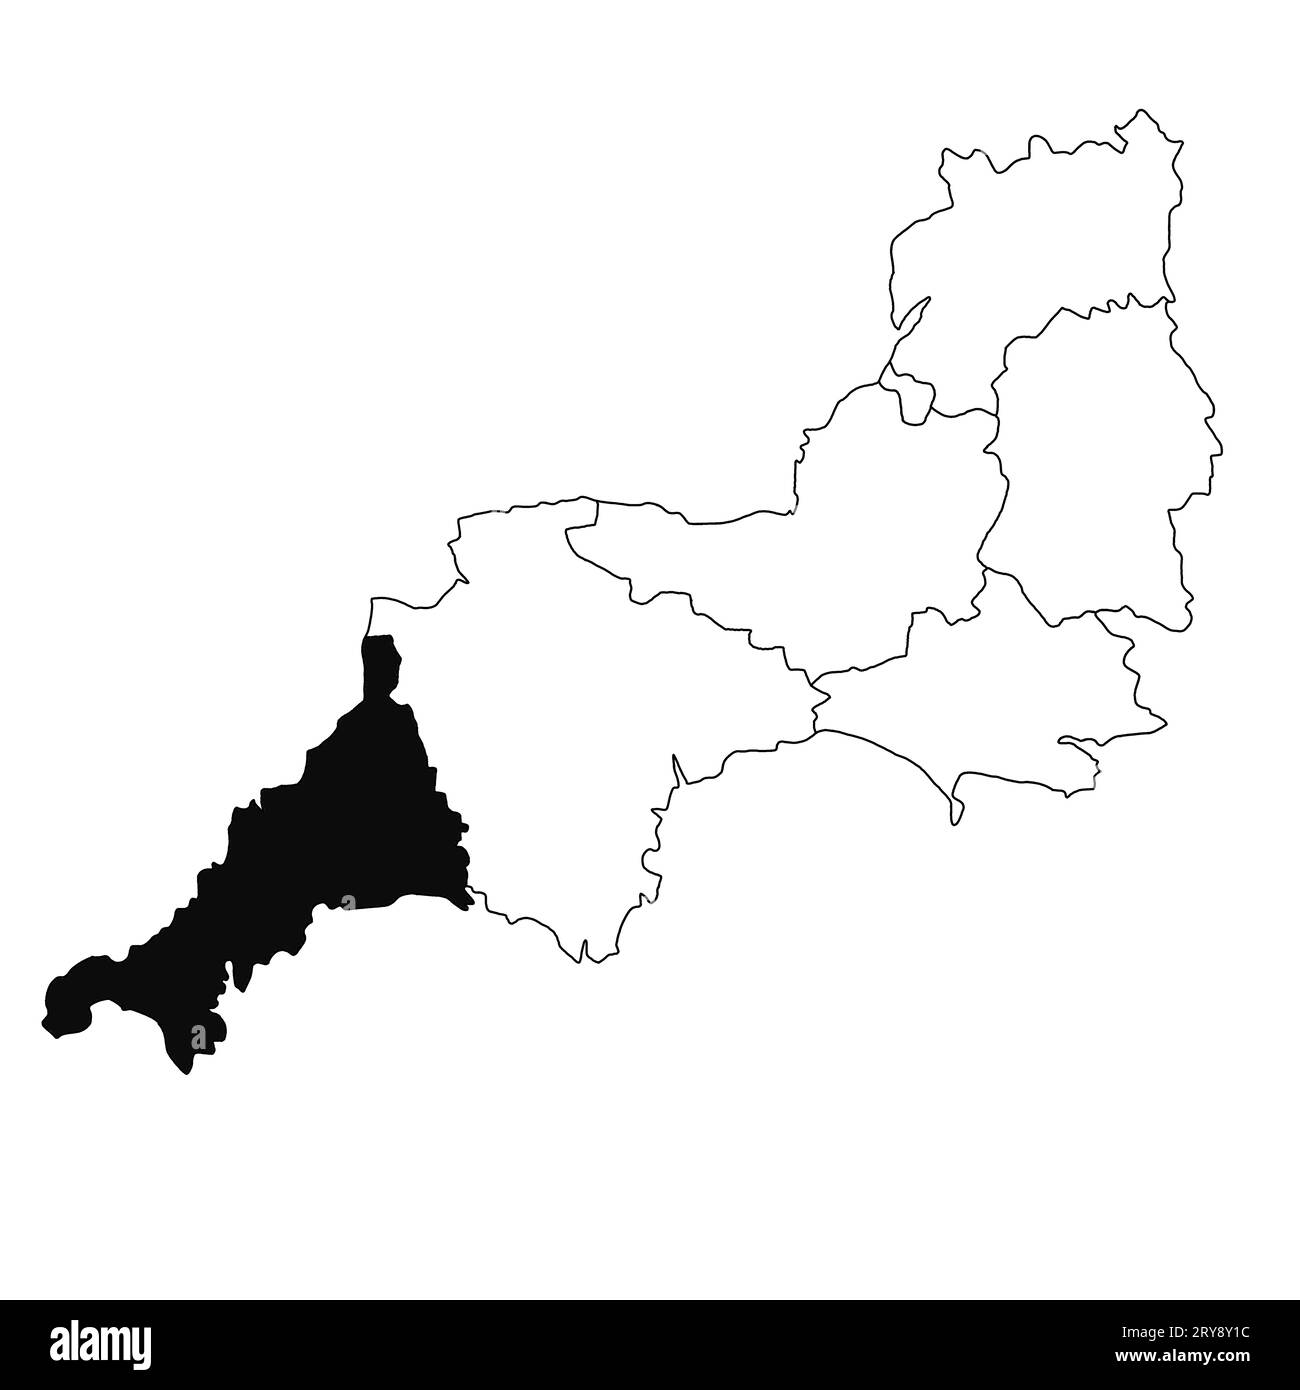 Carte de Cornouailles dans la province du sud-ouest de l'Angleterre sur fond blanc. Carte du comté unique mise en évidence par la couleur noire sur le sud-ouest de l'Angleterre administrative Banque D'Images